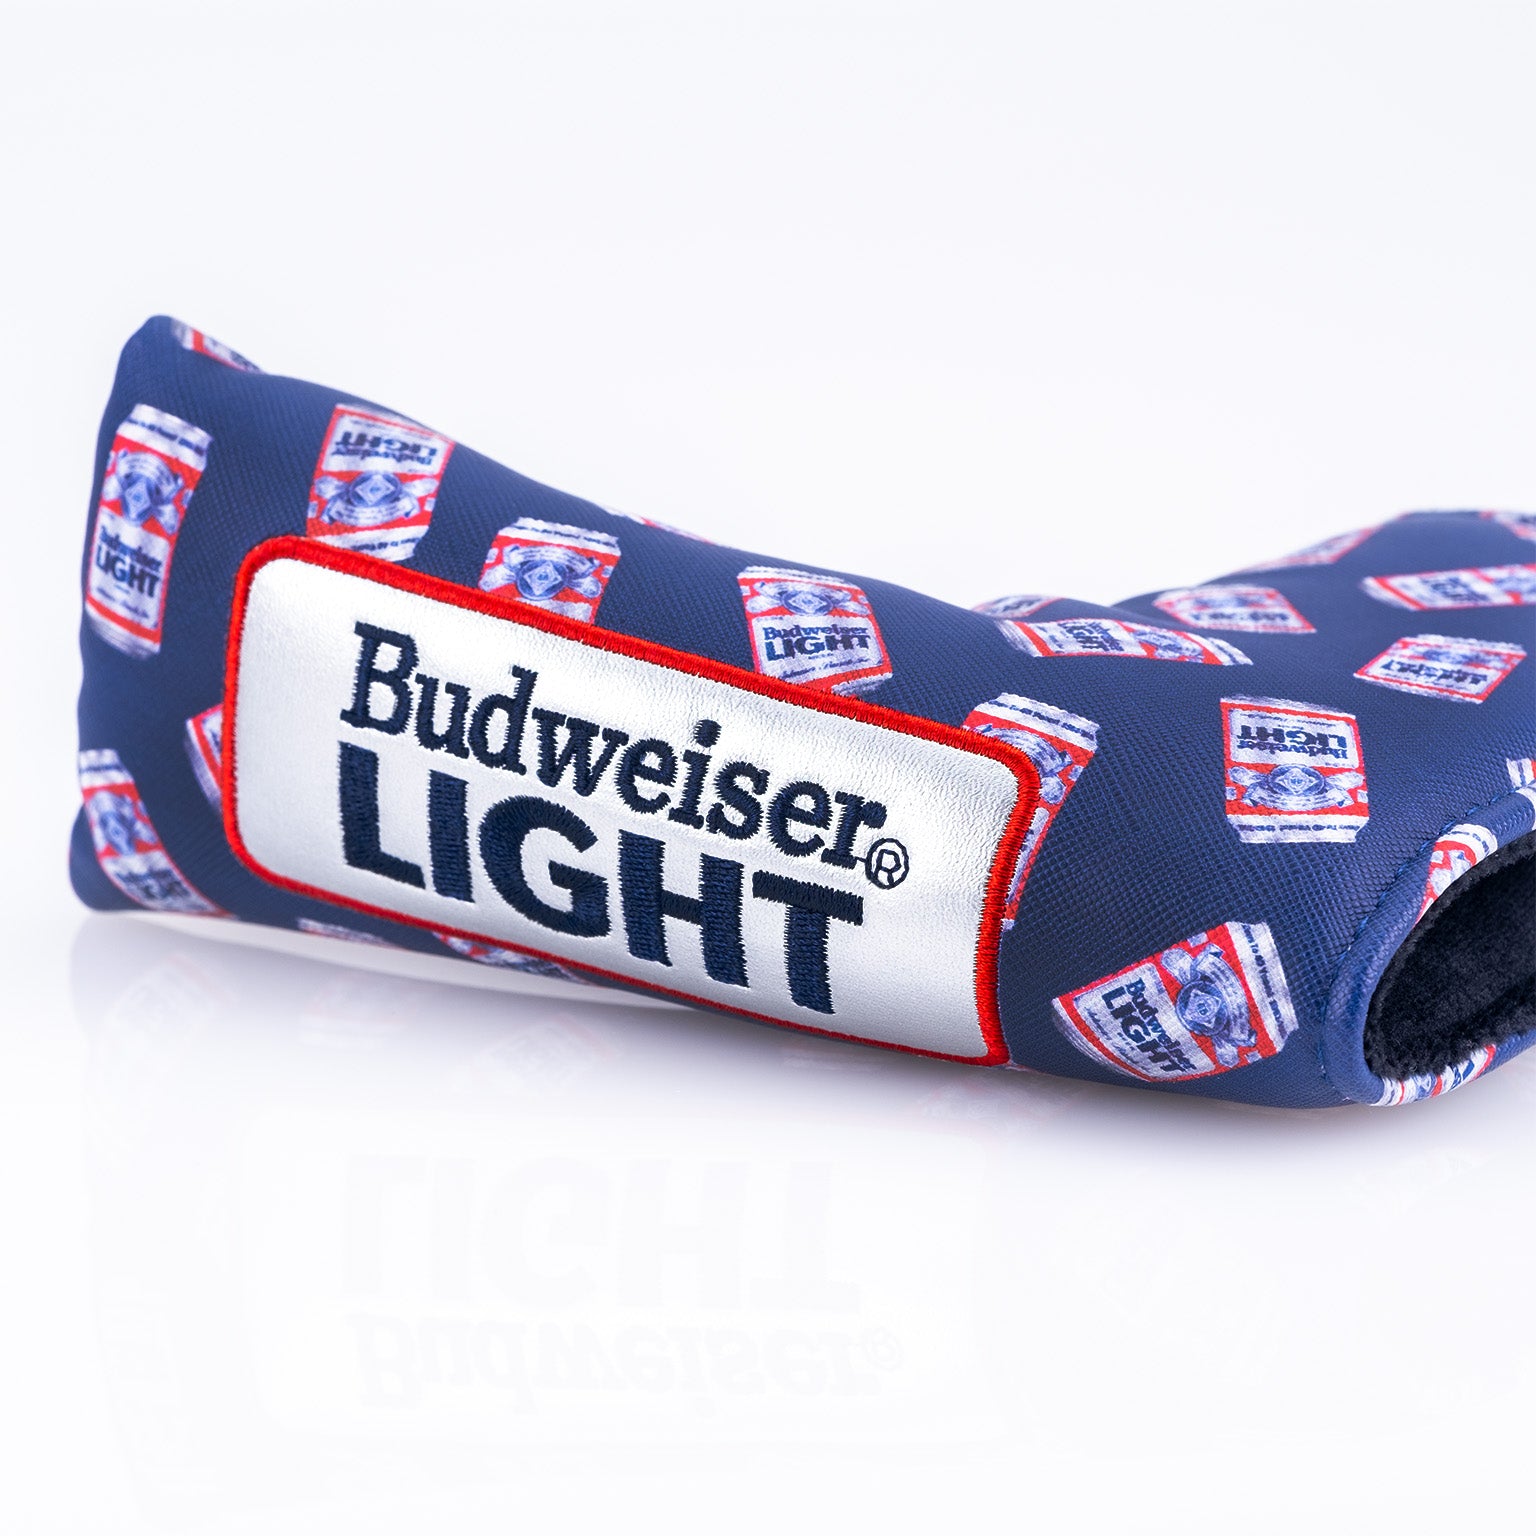 Budweiser Light - Blade Putter Cover